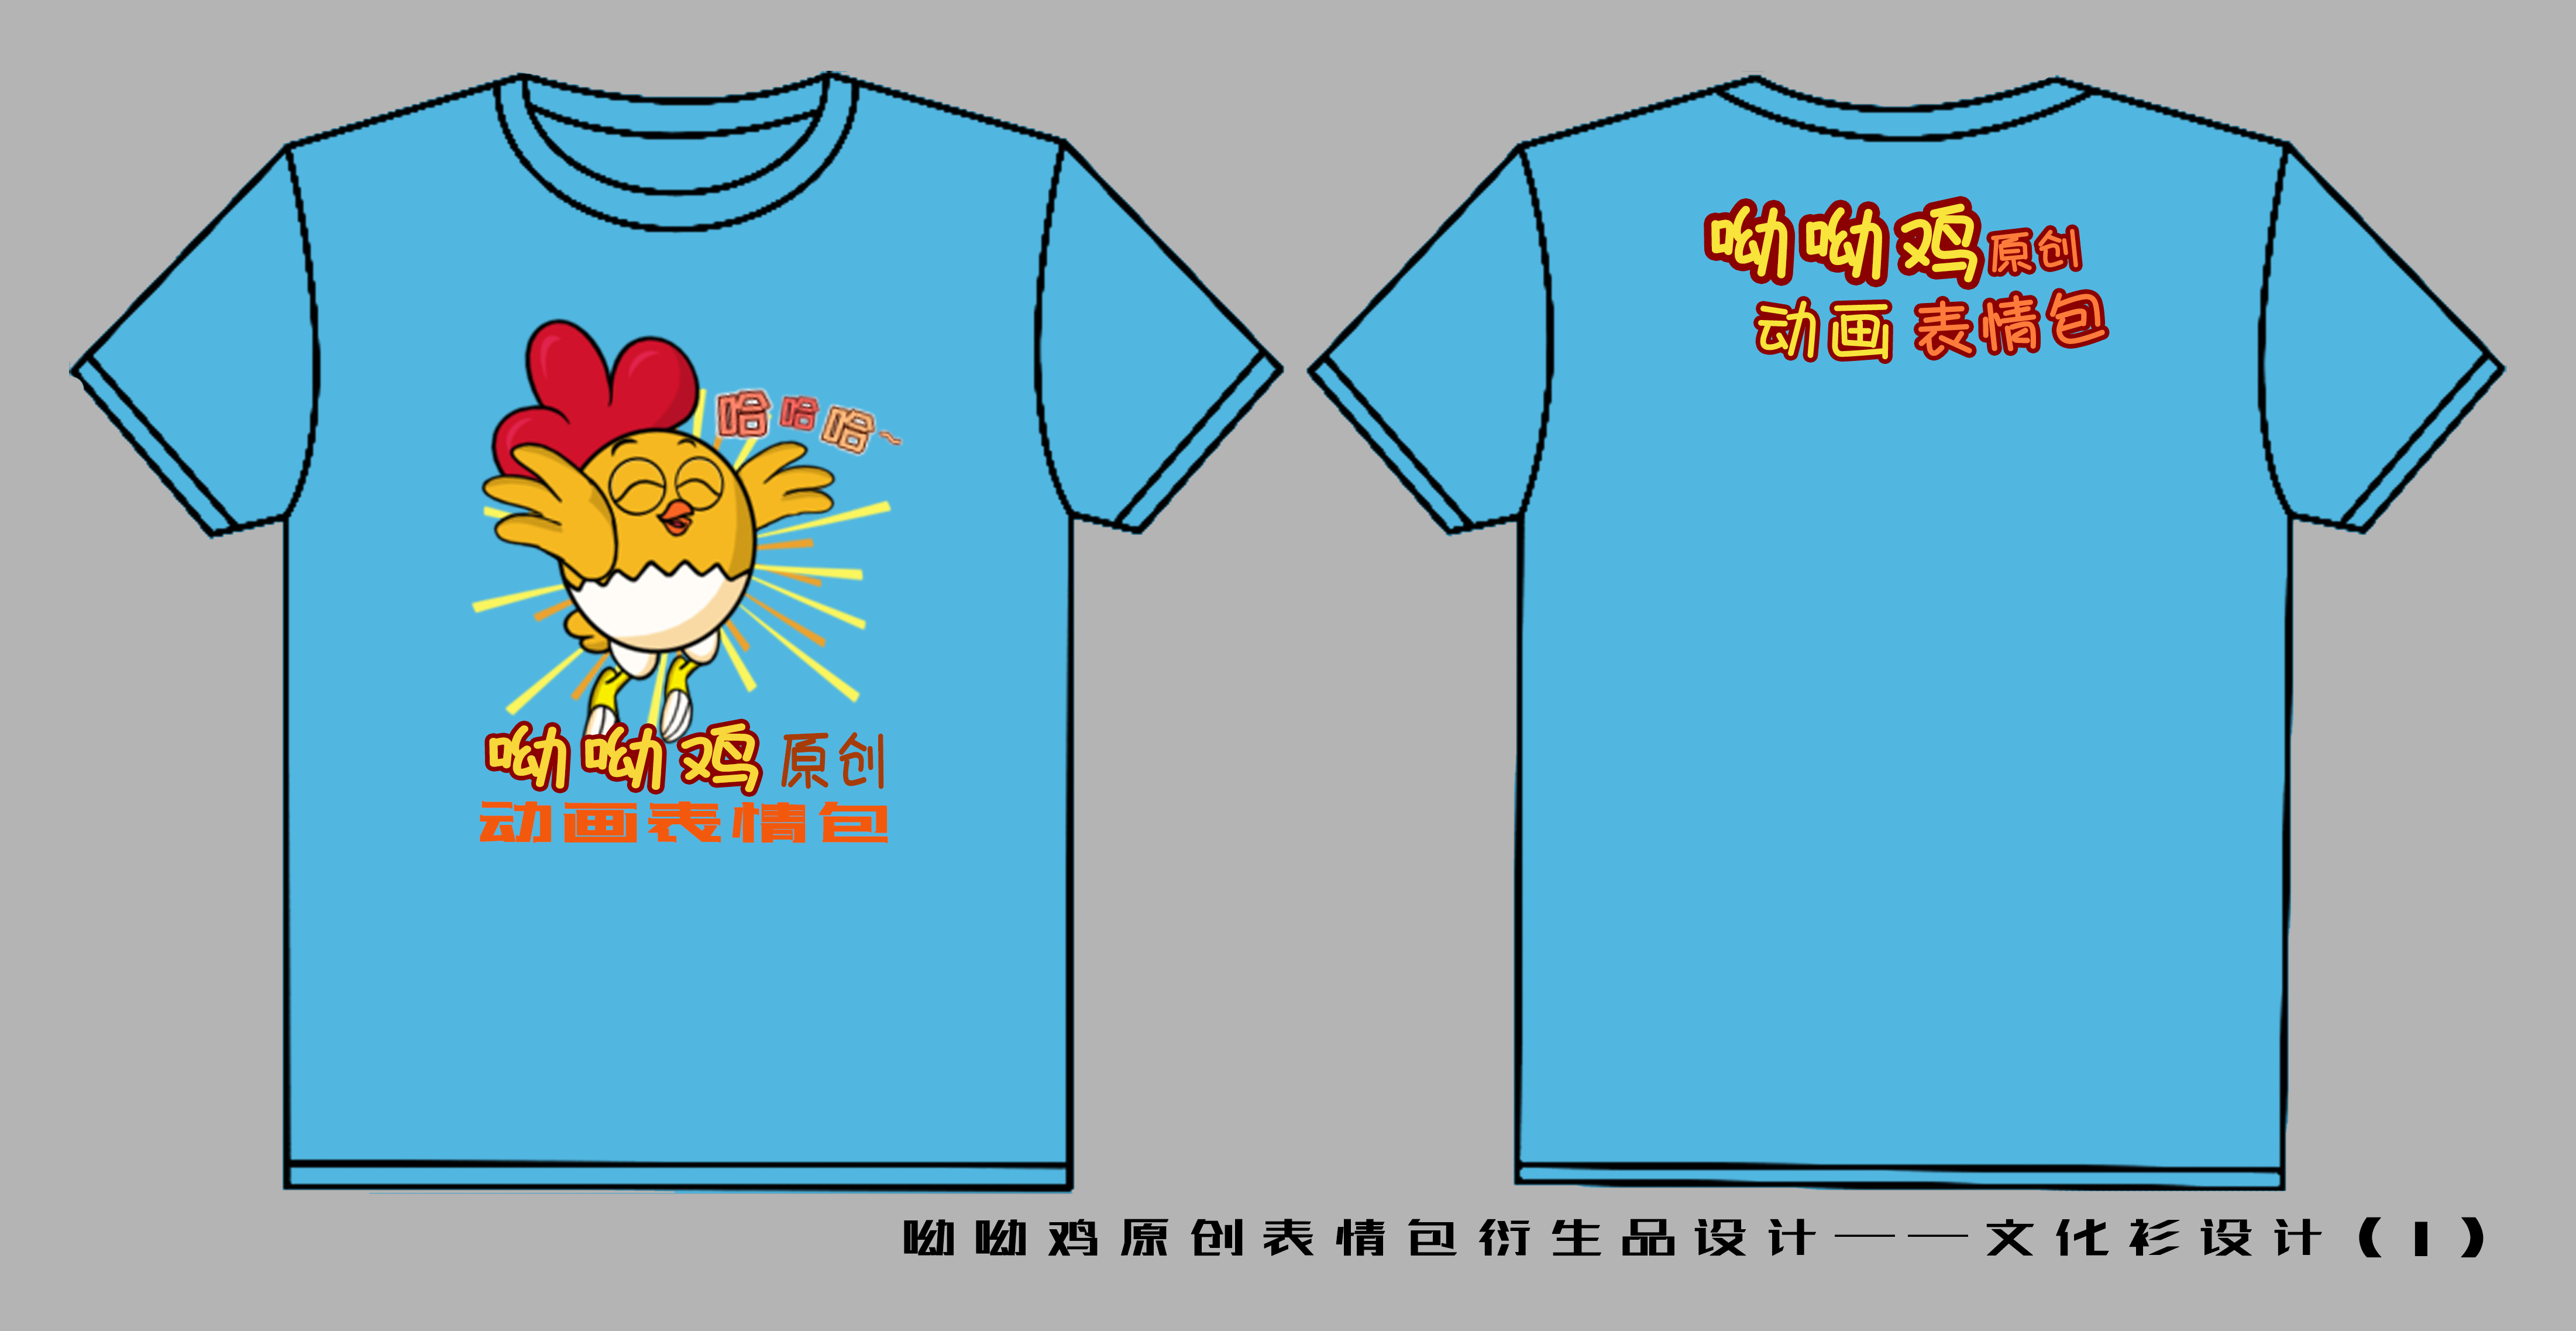 《“呦呦鸡”原创动画表情包周边设计之文化衫》